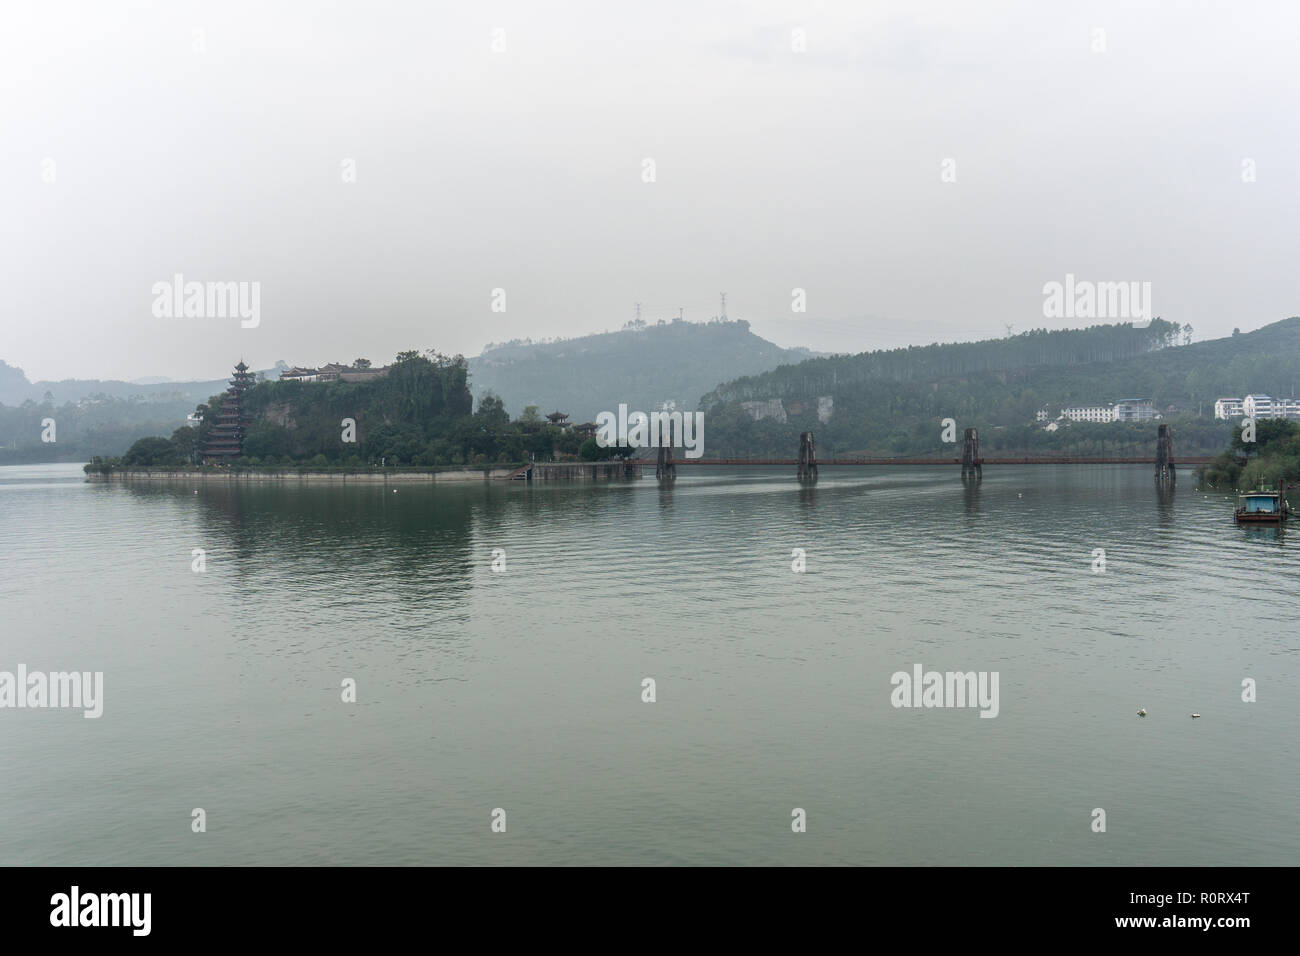 Historic Shbaozhai Pagoda along the Yangtze River Stock Photo